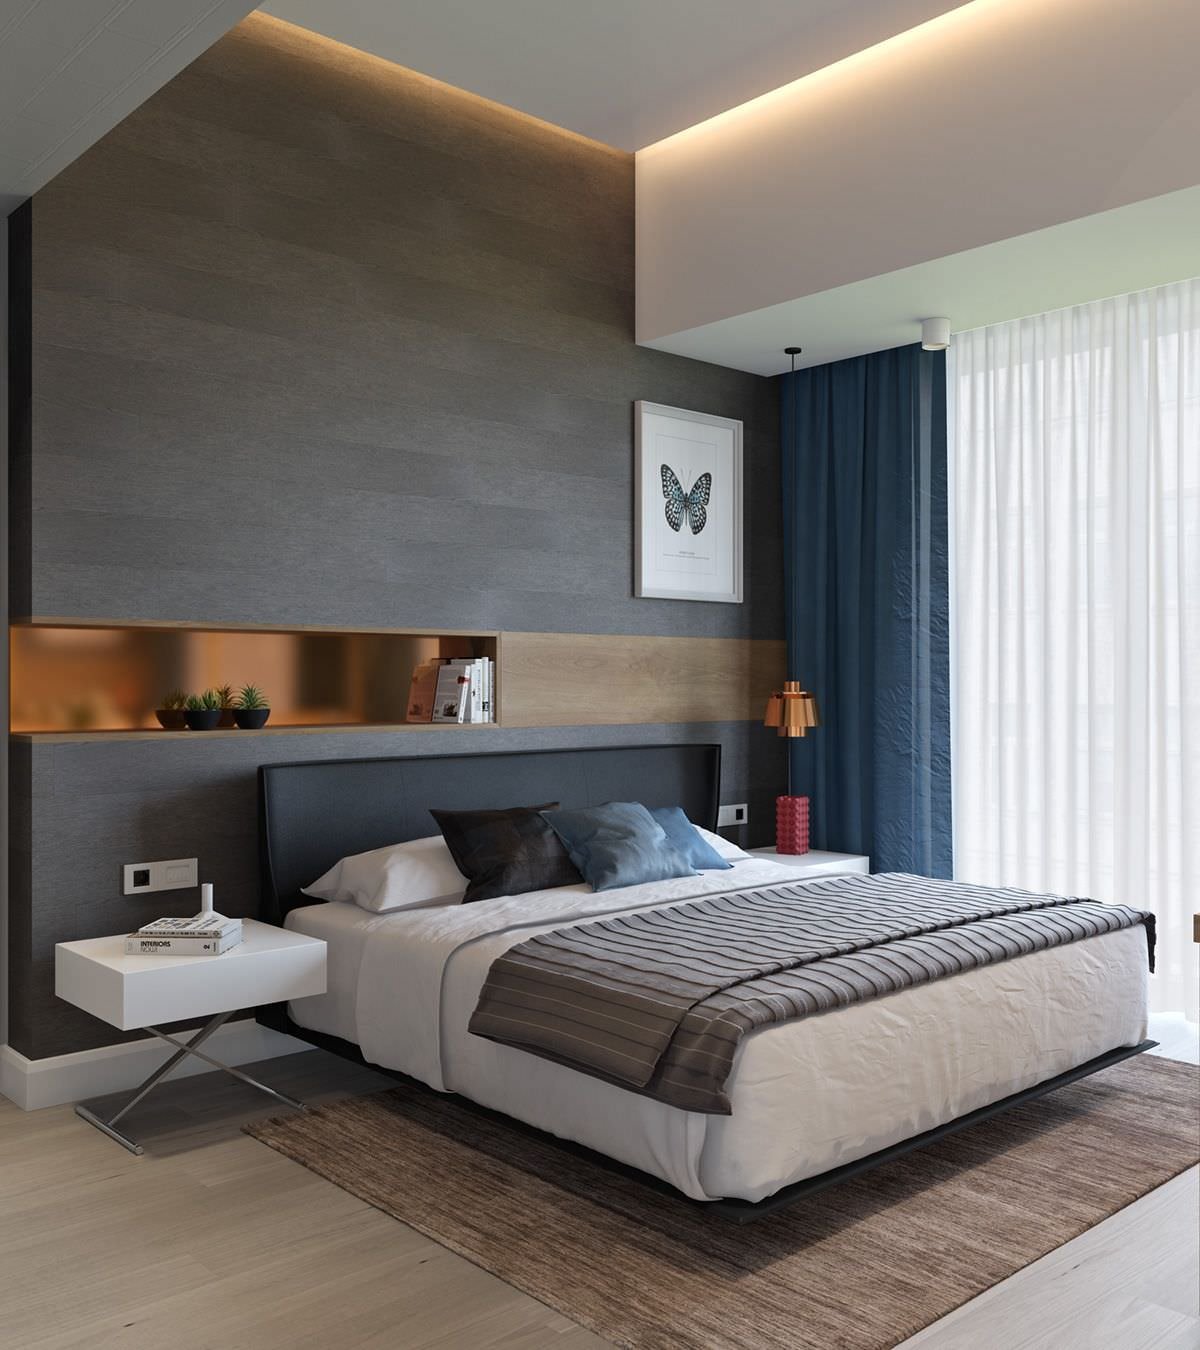 Camera da letto moderna con la testata della parete in legno - interessante illuminazione diffusa sul soffitto - colori naturali, bianco, marrone, nero e blu